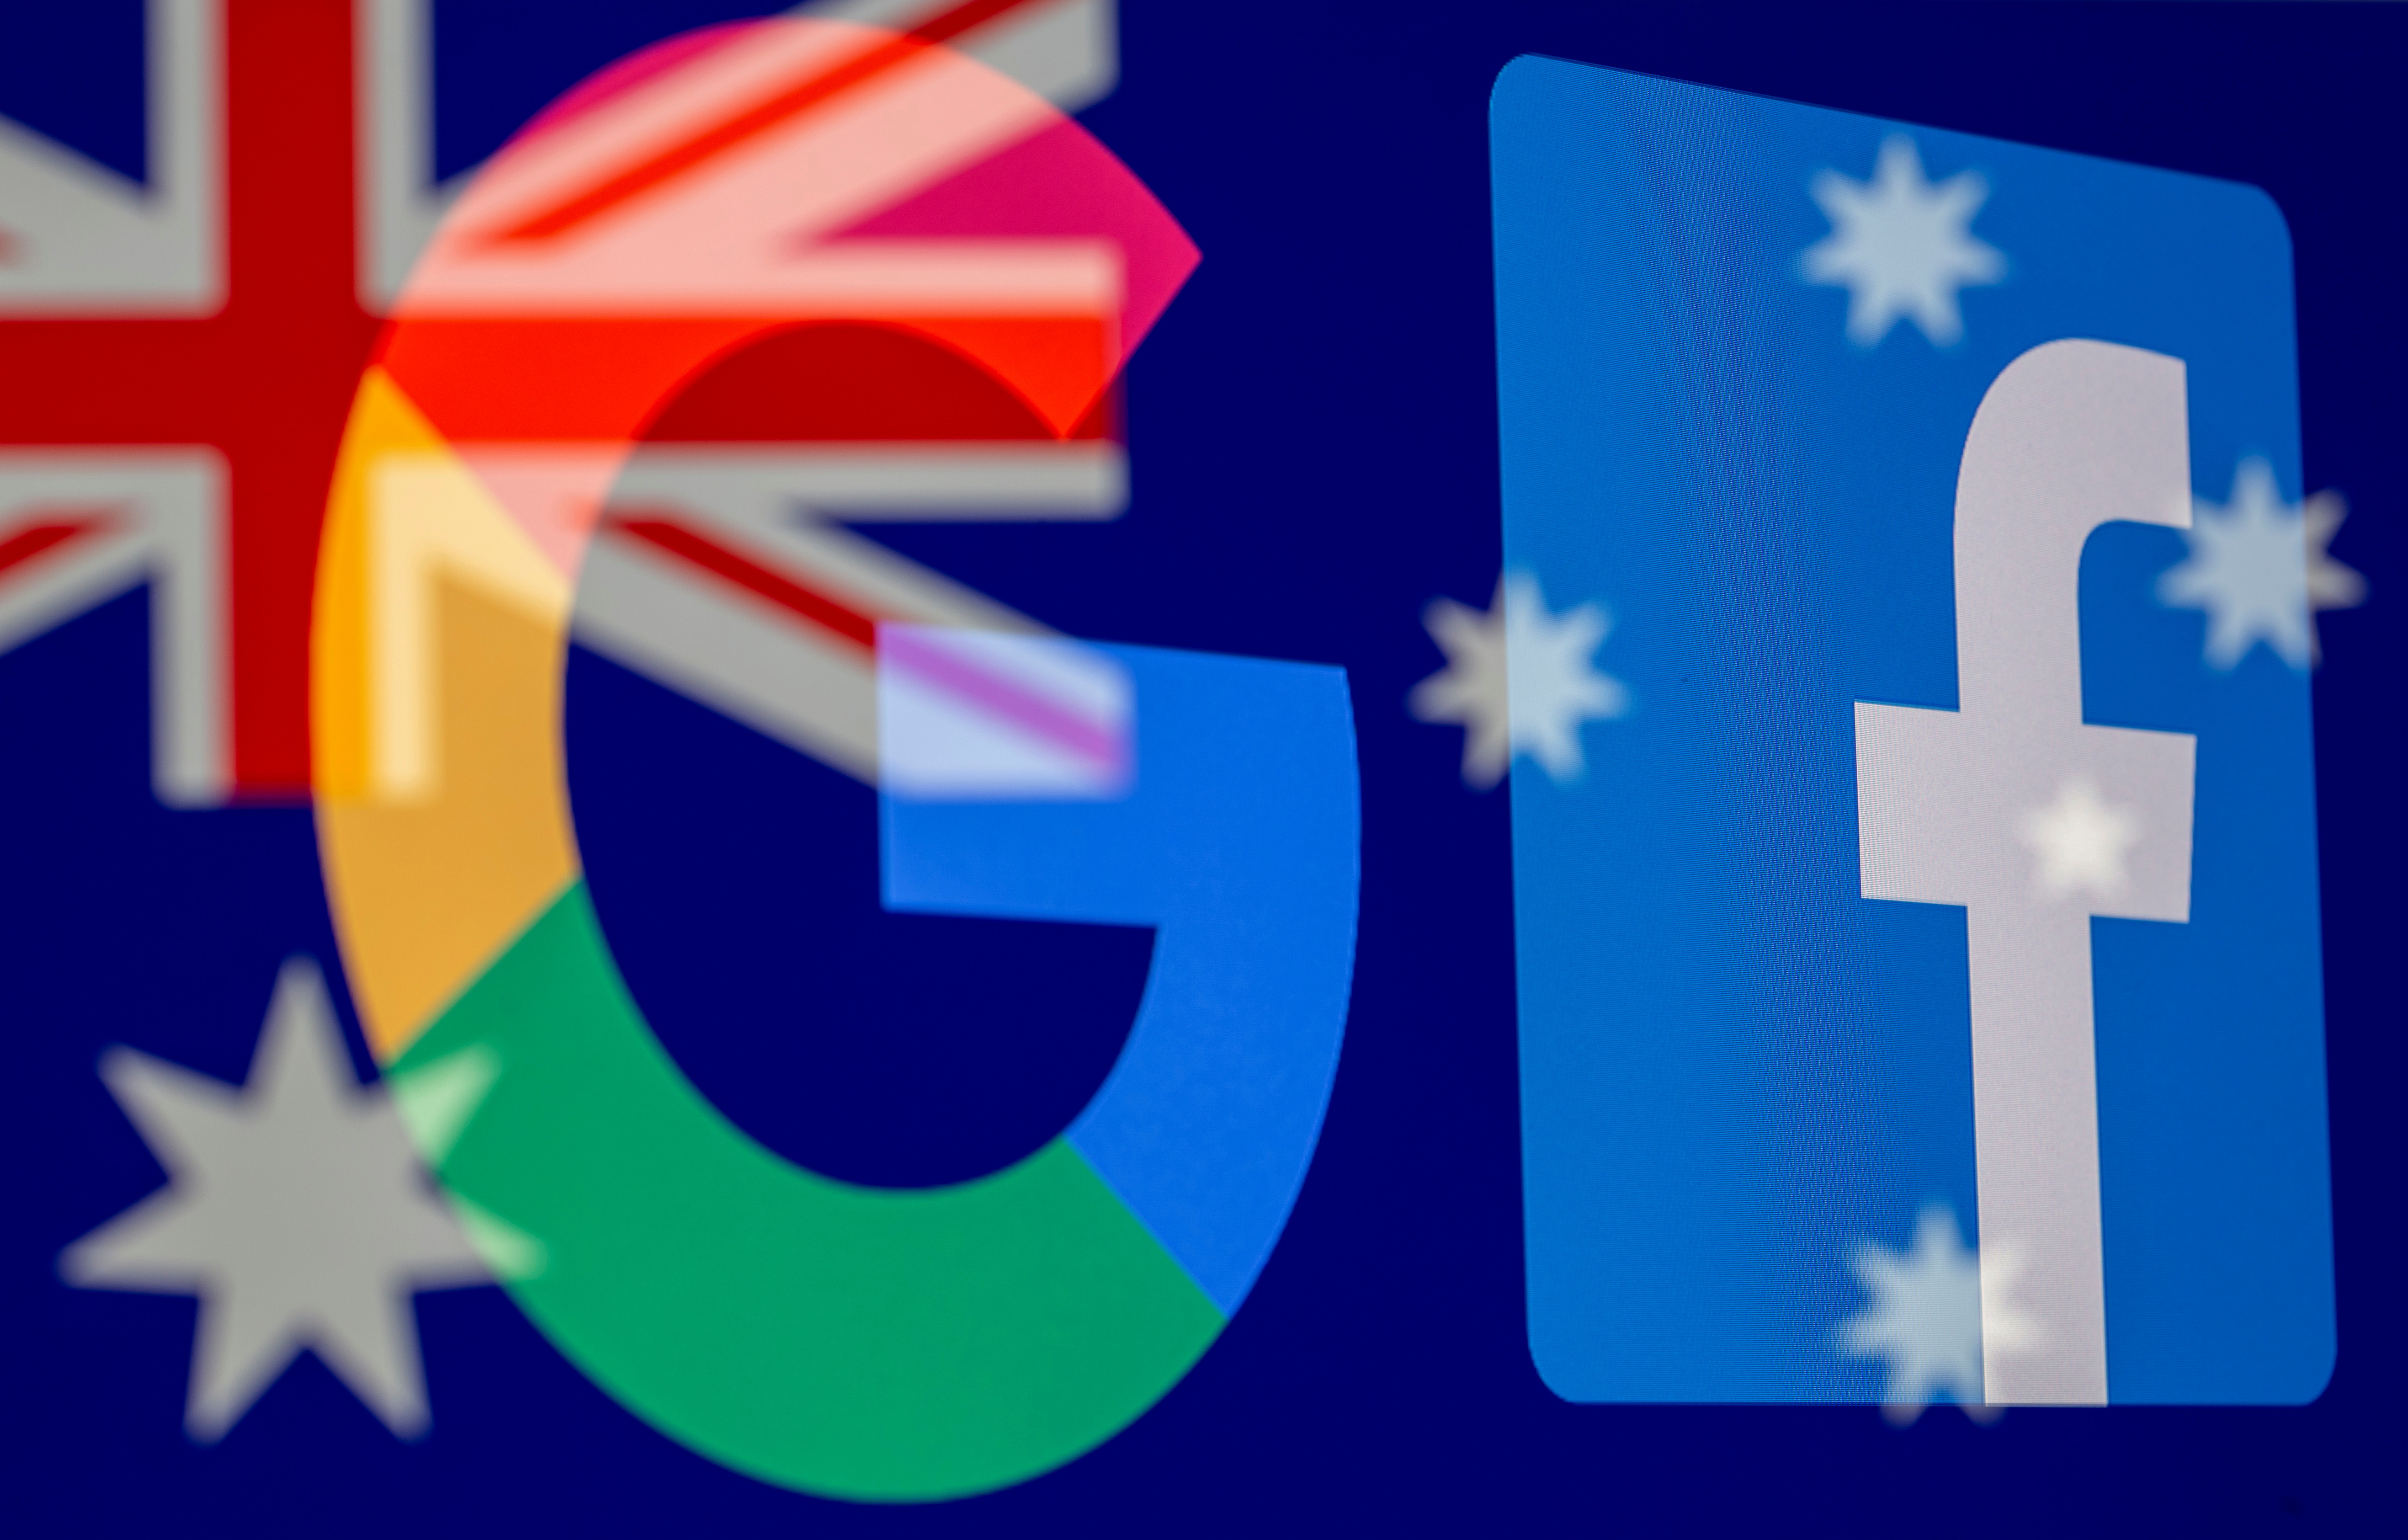 Los logos de Google y Facebook reflejados sobre una bandera australiana.